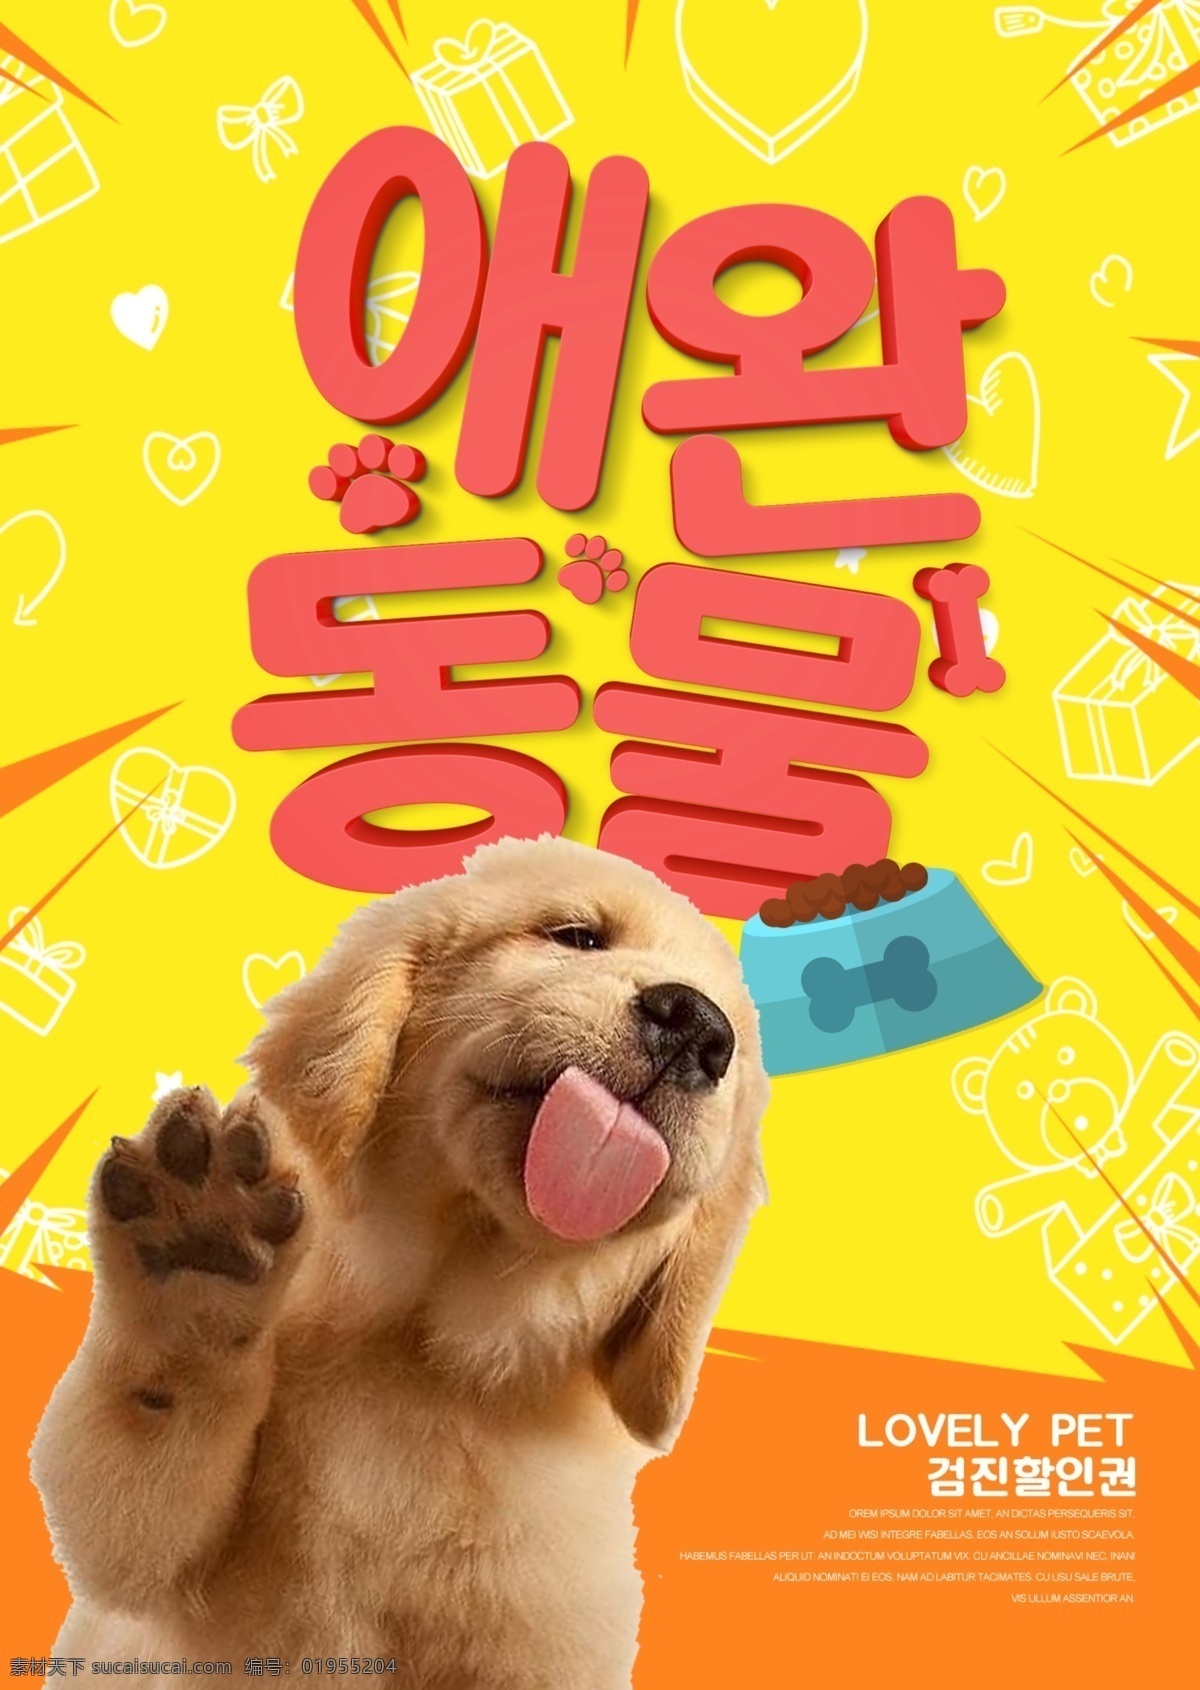 卡通 时尚 可爱 韩国 宣传海报 谈谈关于 装饰 海报 简单 狗 动物 大韩民国 宠物 动画片 现代